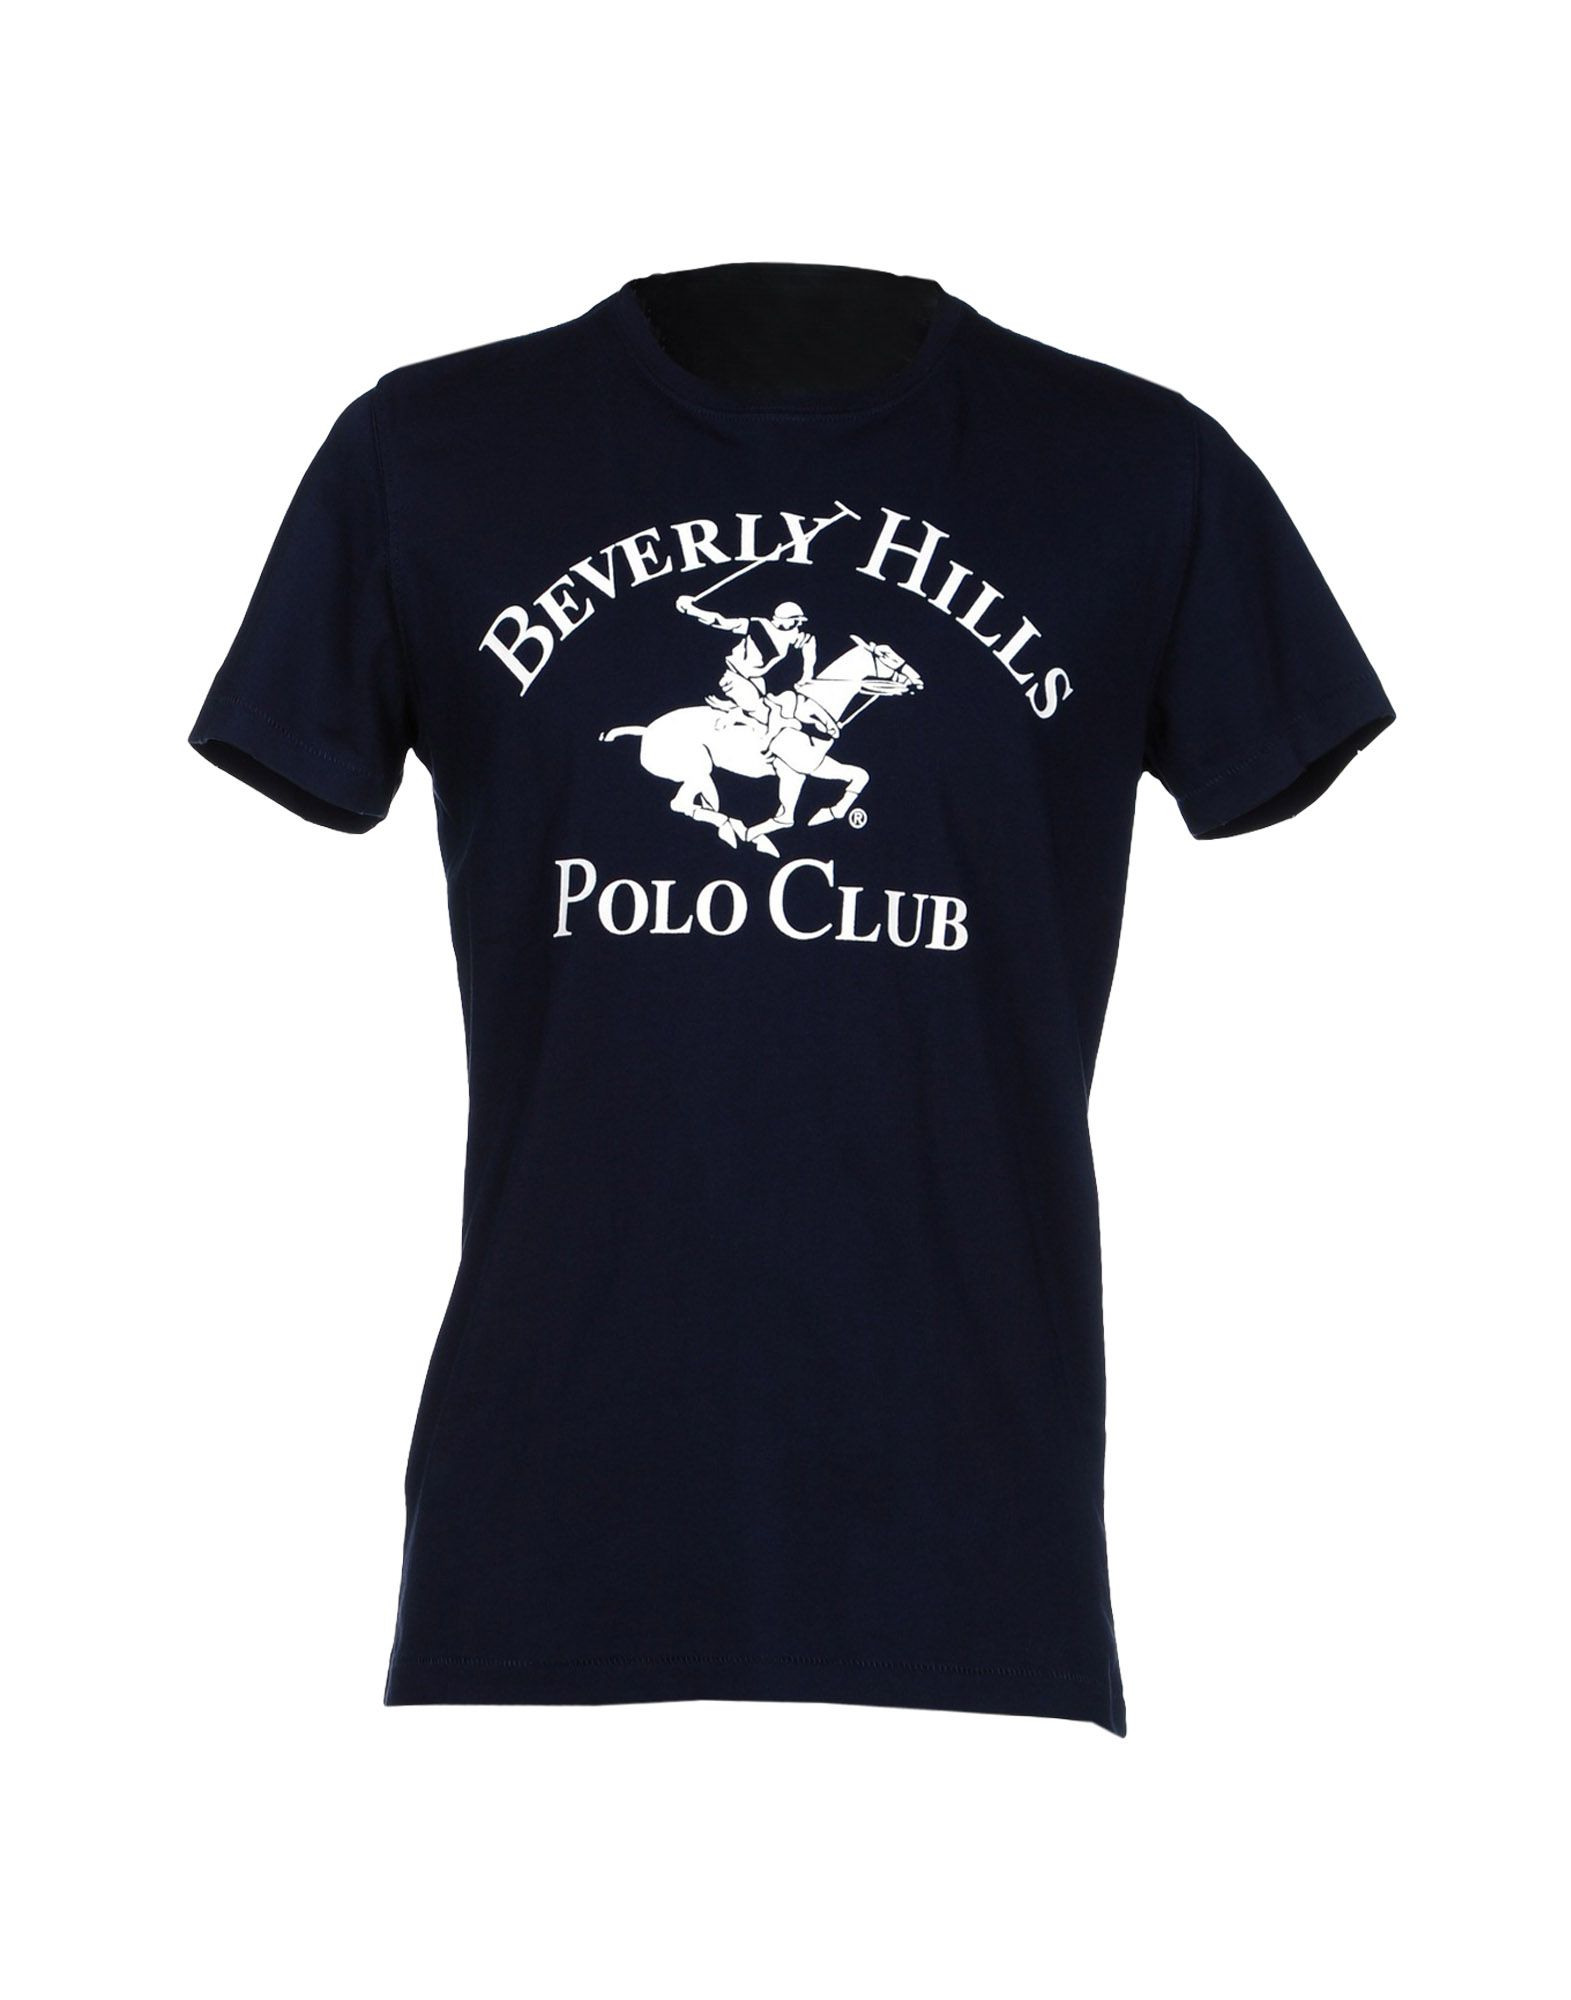 นาฬิกา polo club beverly hills florida